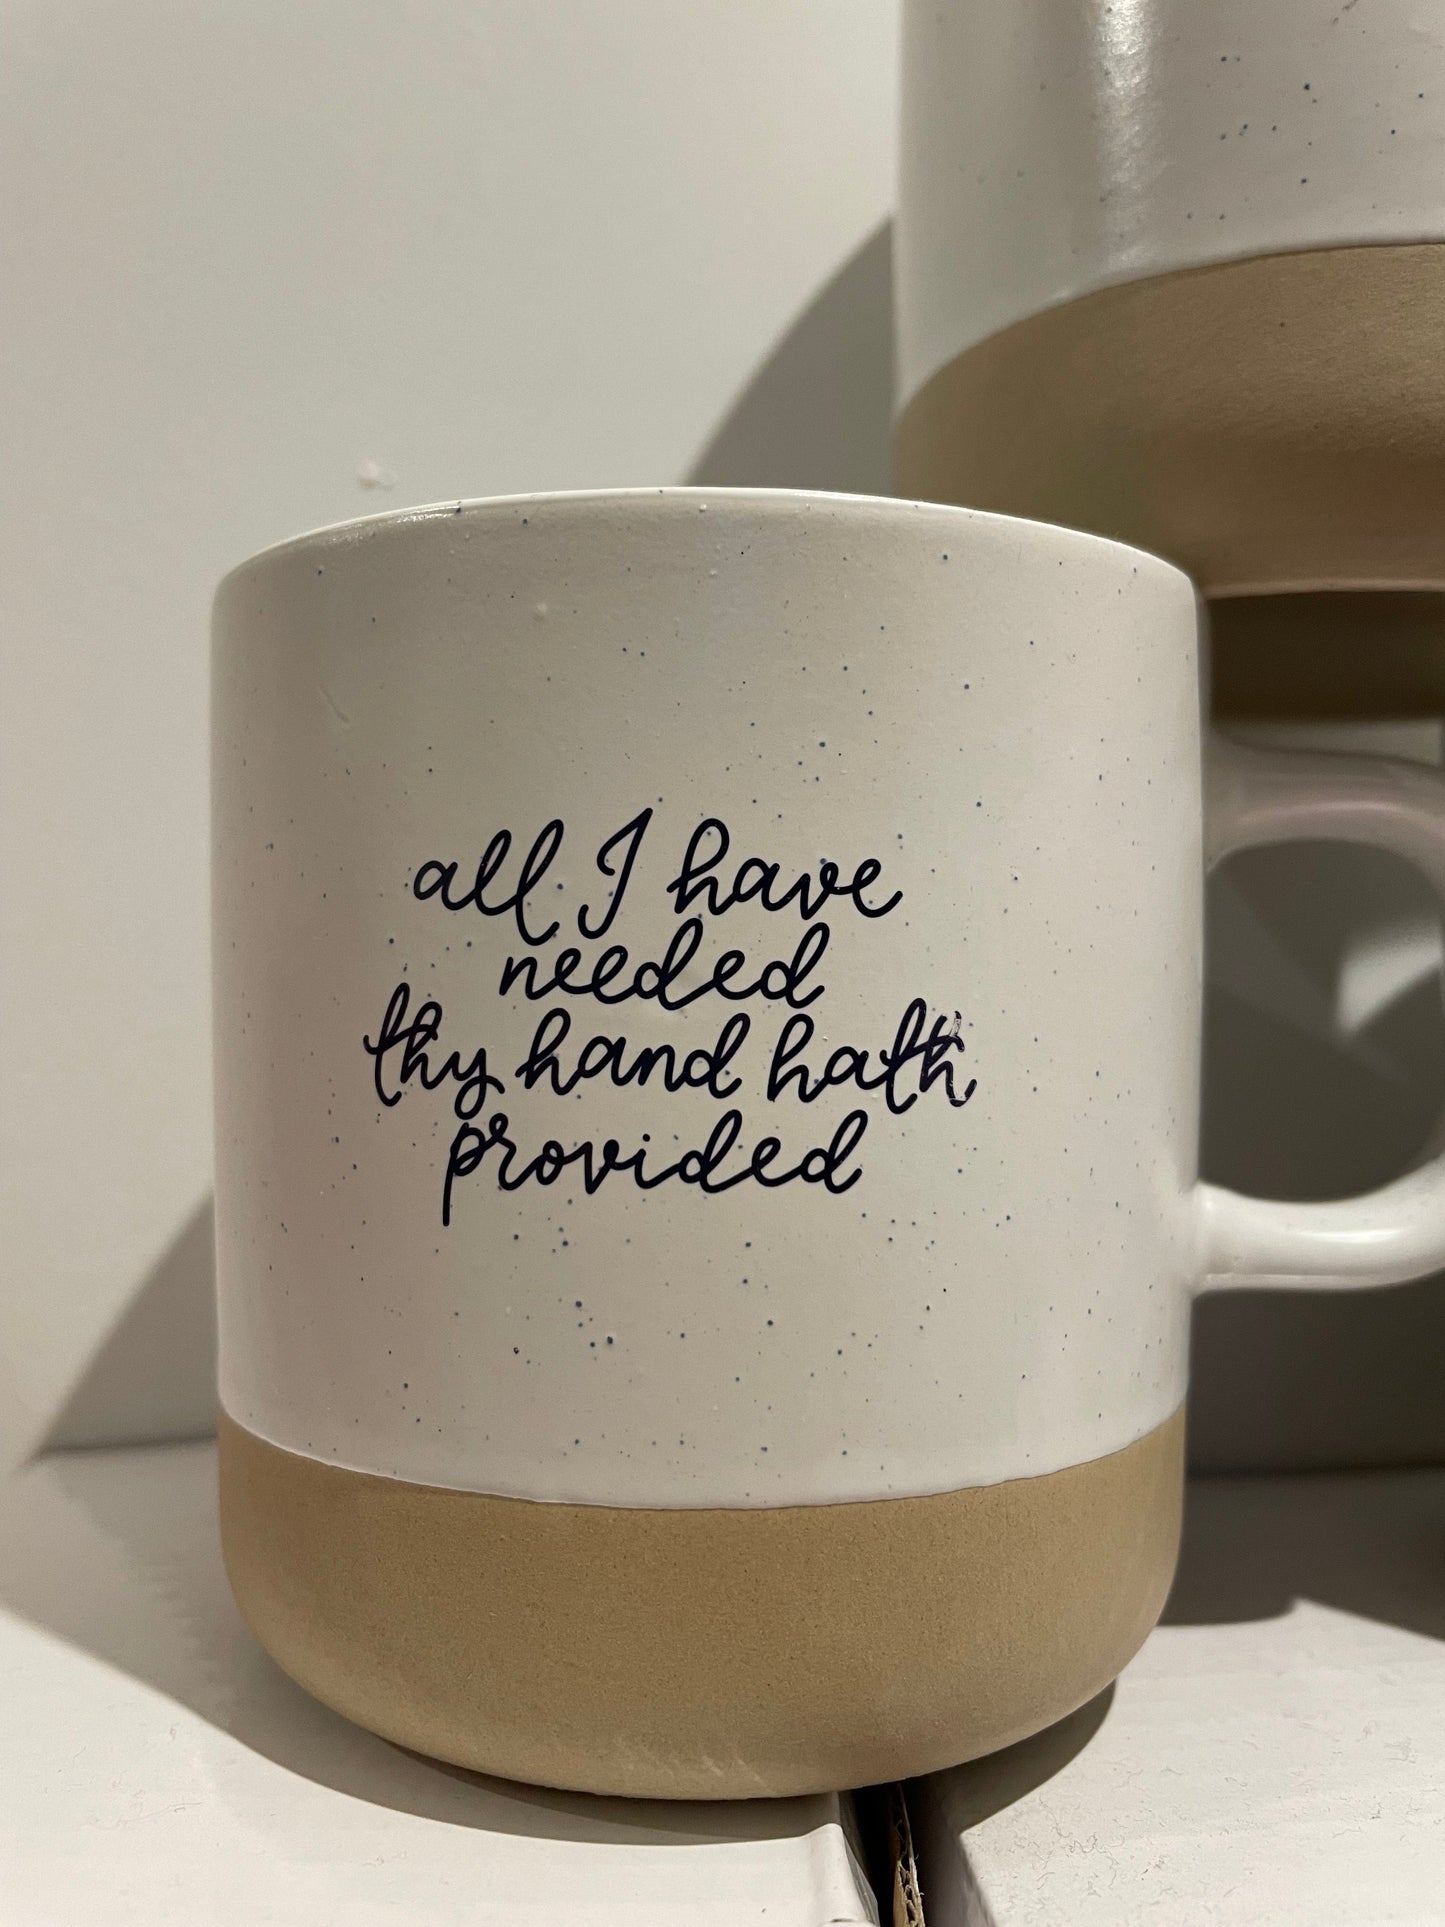 SECONDS - Christian Mug Mug And Hope Designs   